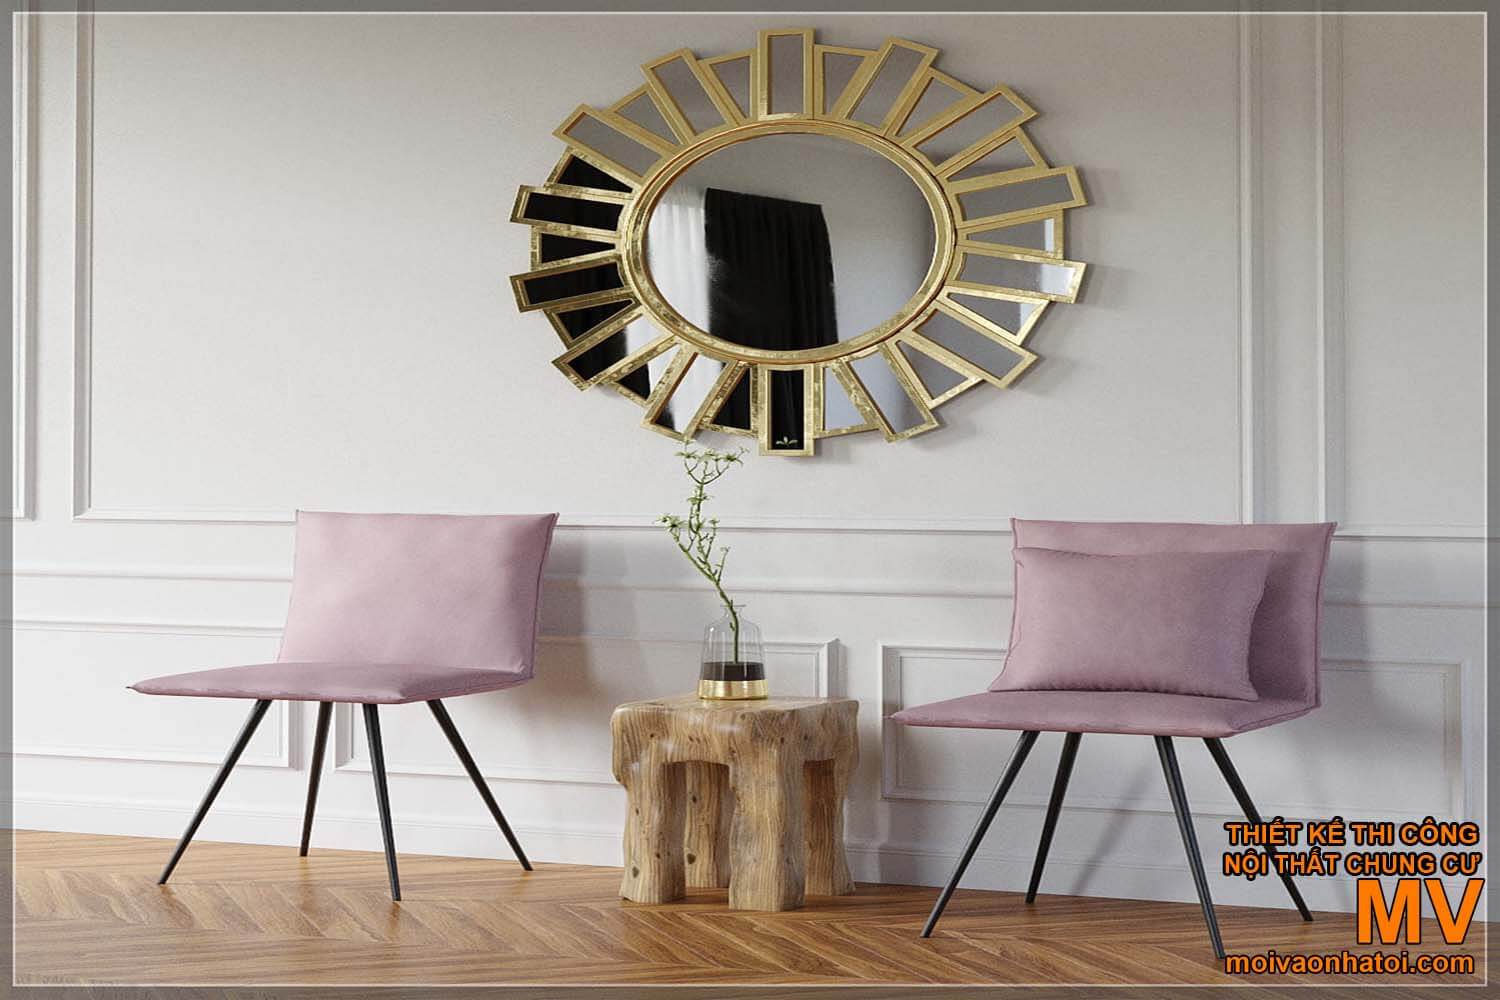 Mẫu bàn ghế nội thất phong cách scandinavian